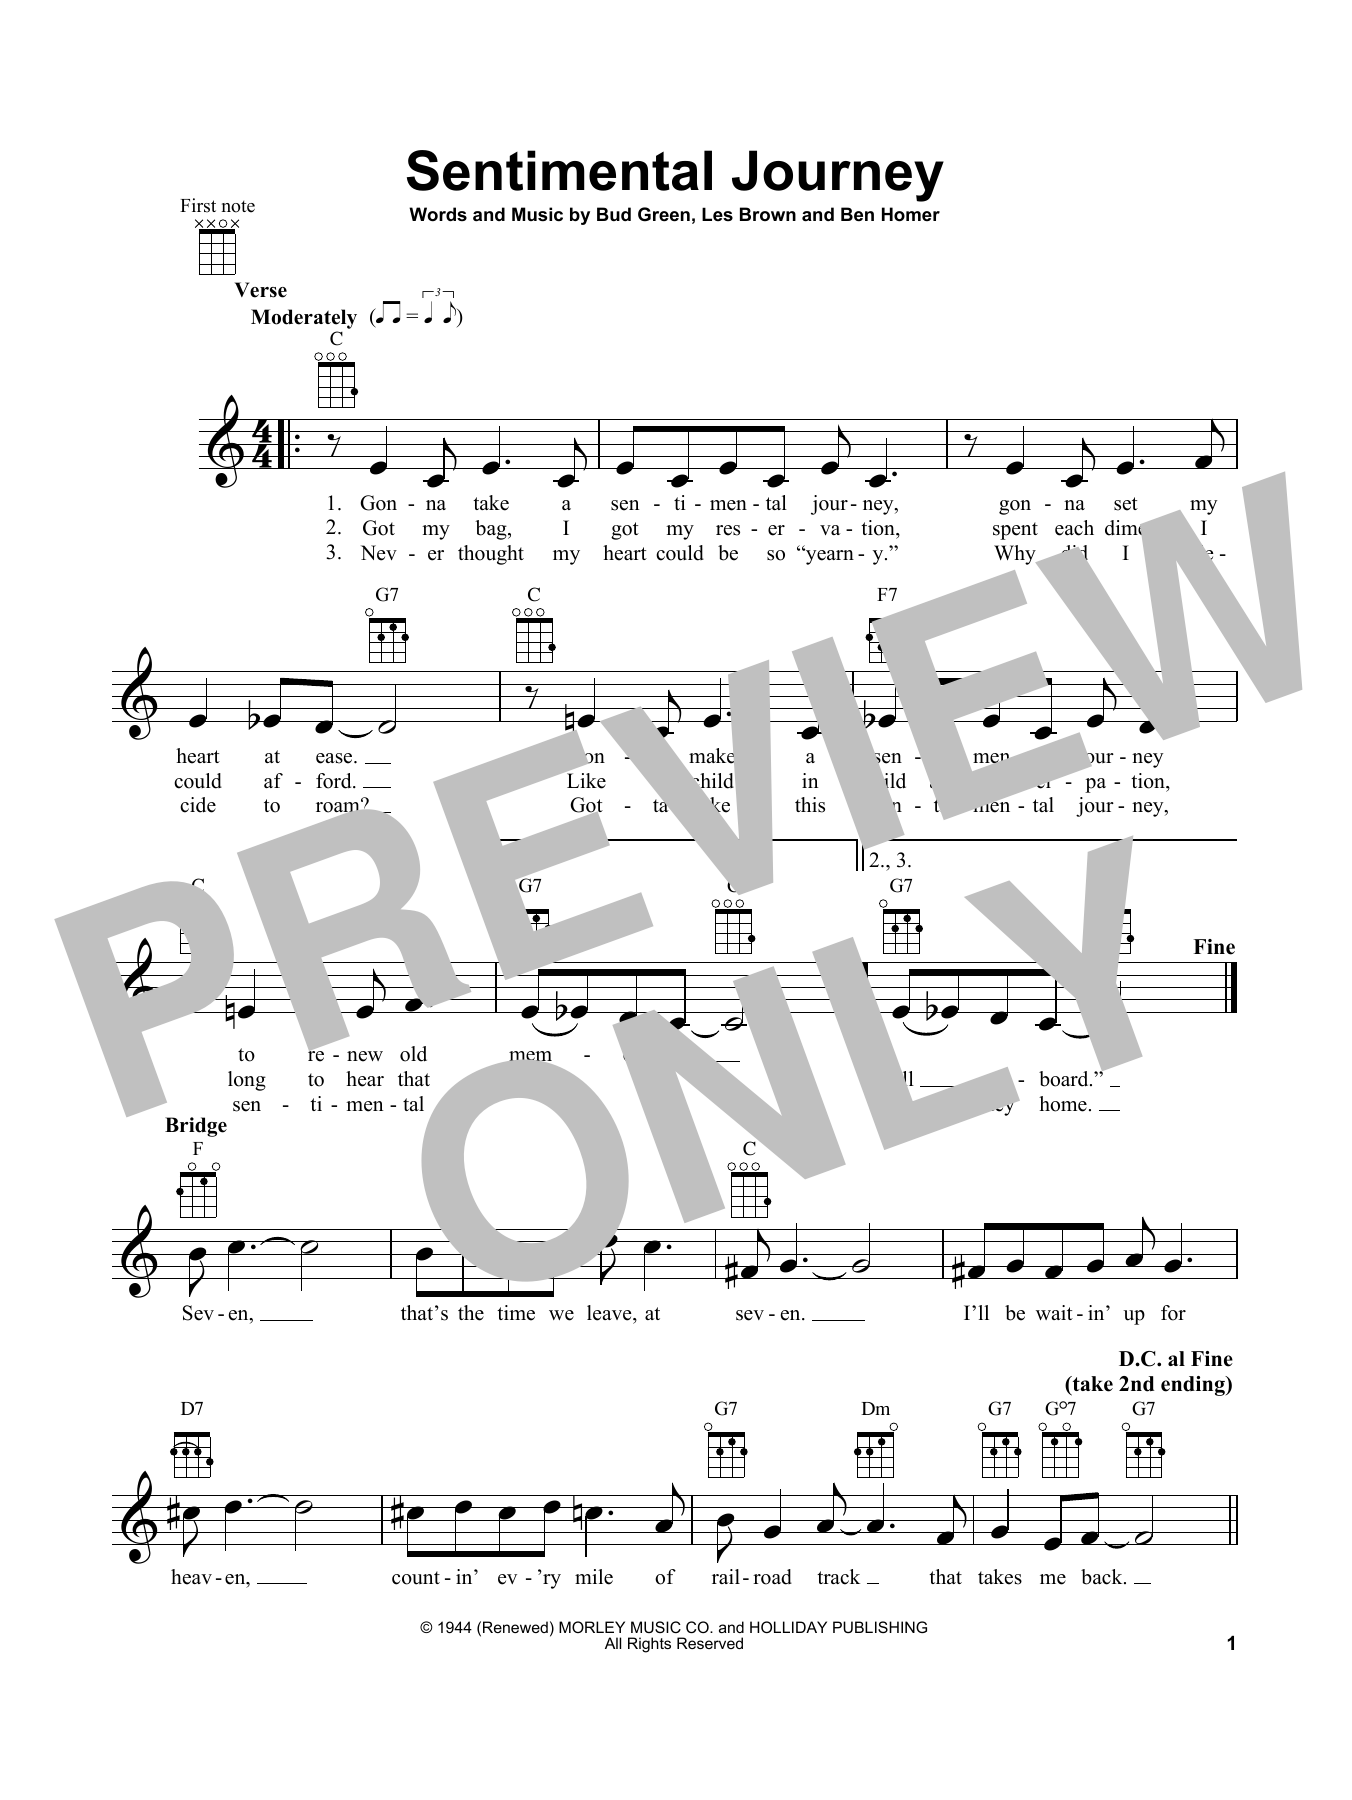 Les Brown Sentimental Journey Sheet Music Notes & Chords for Ukulele - Download or Print PDF